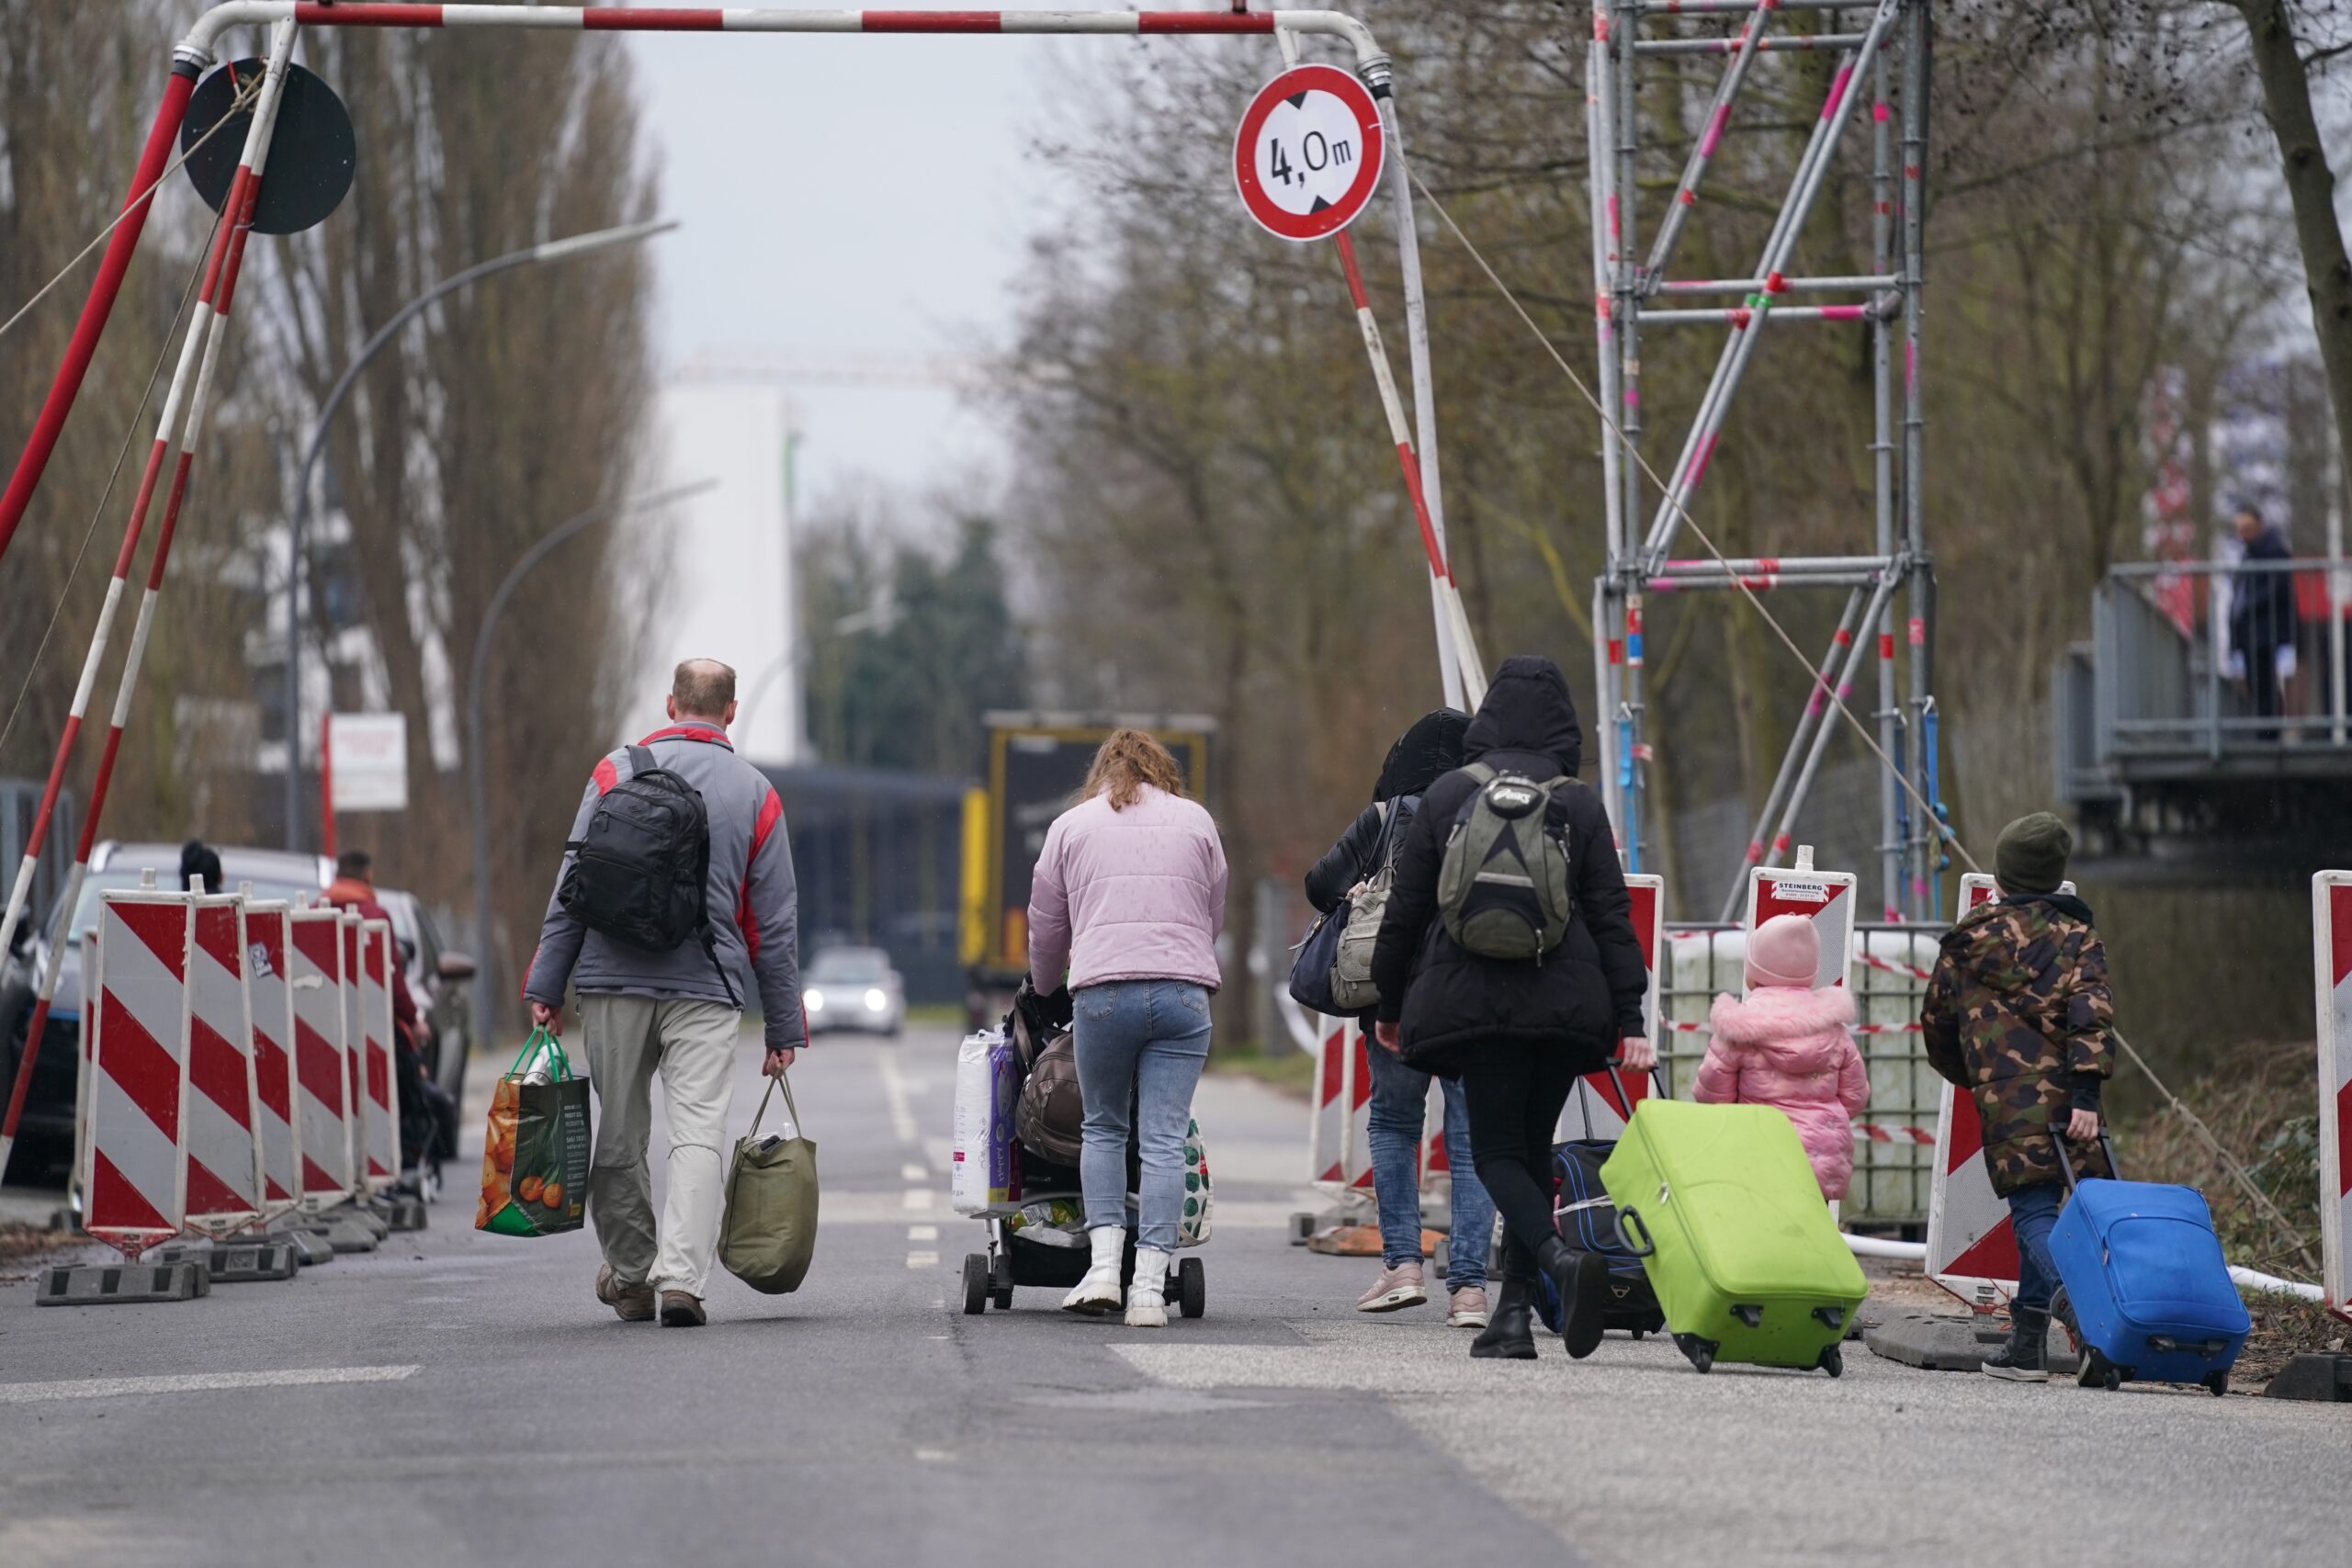 Ukrainische Flüchtlinge verlassen mit ihrem Gepäck die Flüchtlingsunterkunft im ehemaligen Fegro Großmarkt im Stadtteil Harburg